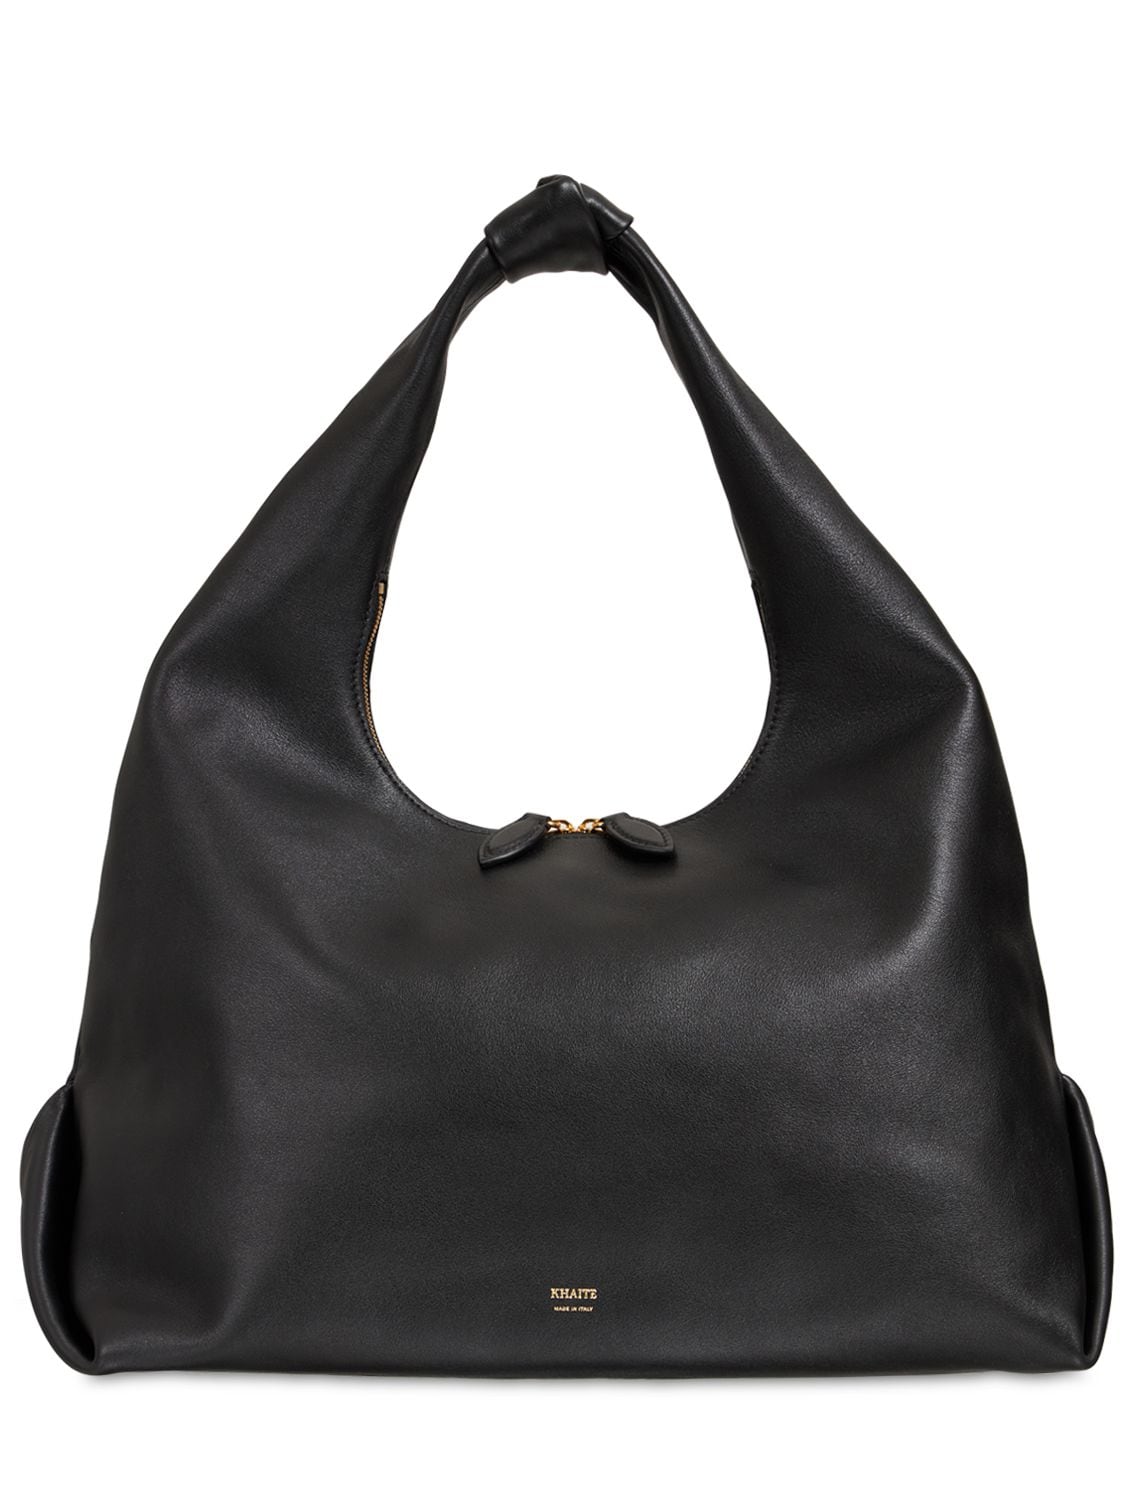 Khaite Large Beatrice Leather Hobo Bag In Black | ModeSens